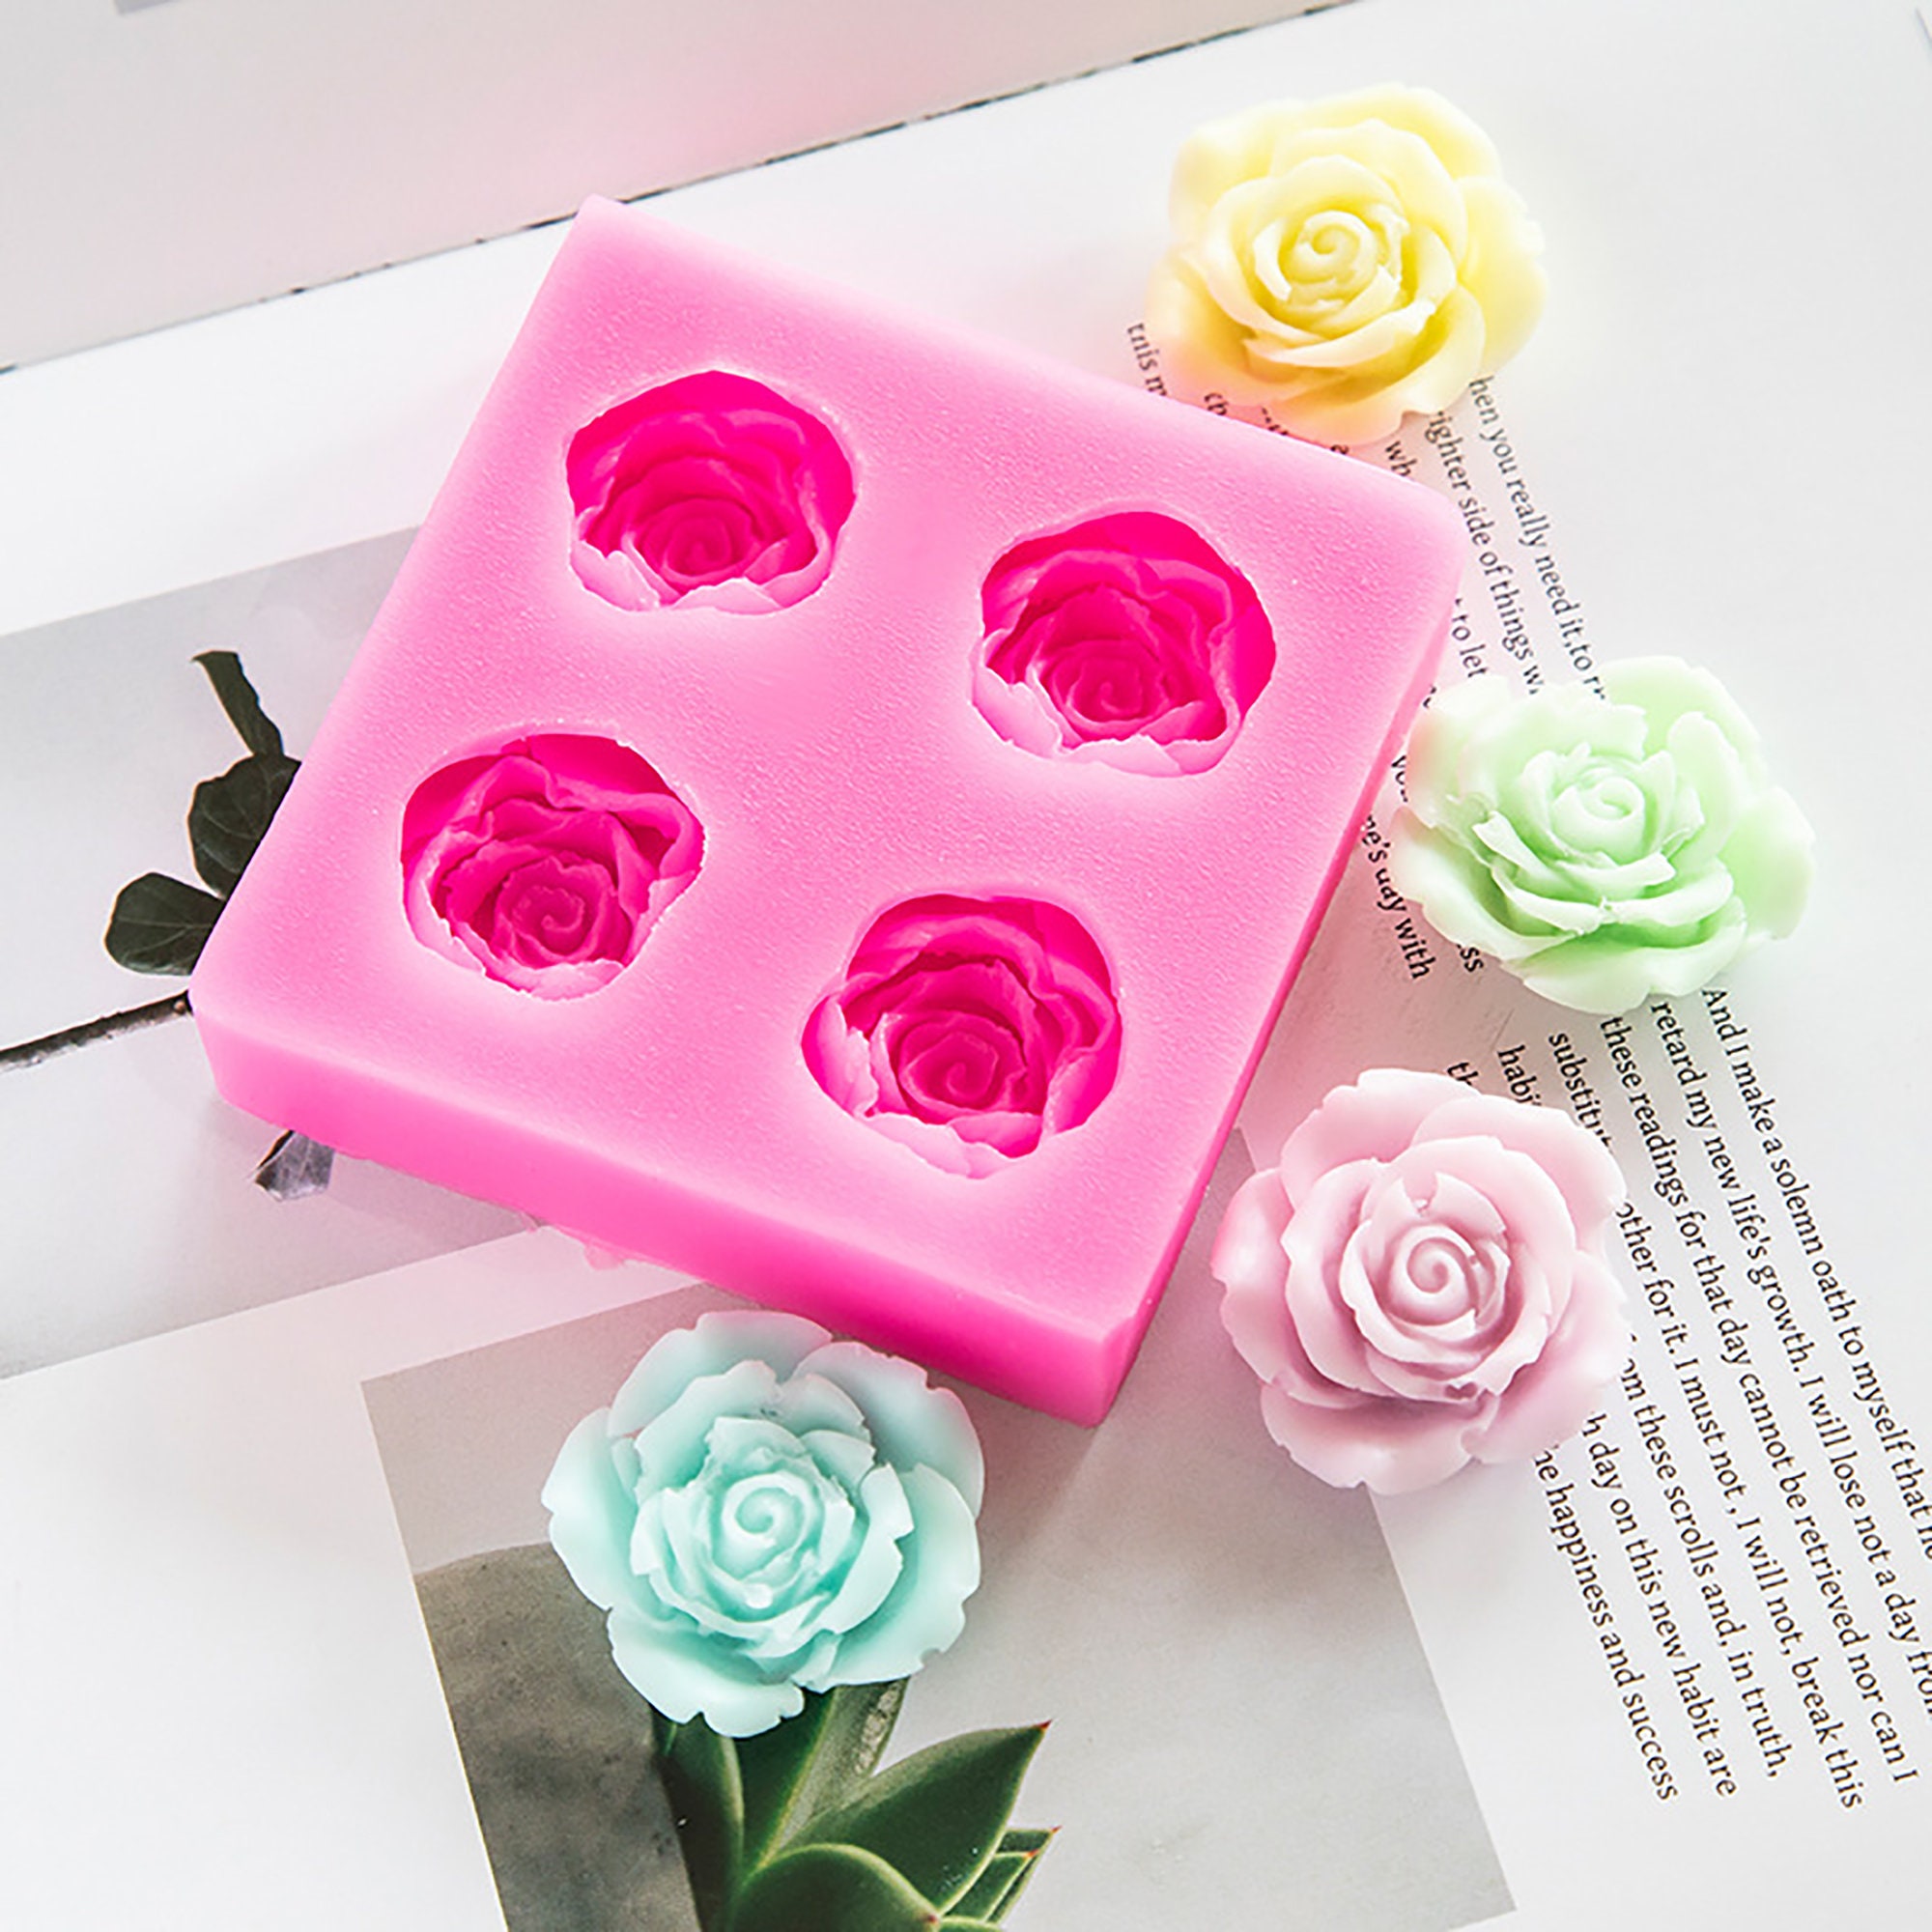 ROSES Mold - 3D floral - Innovative Sugarworks